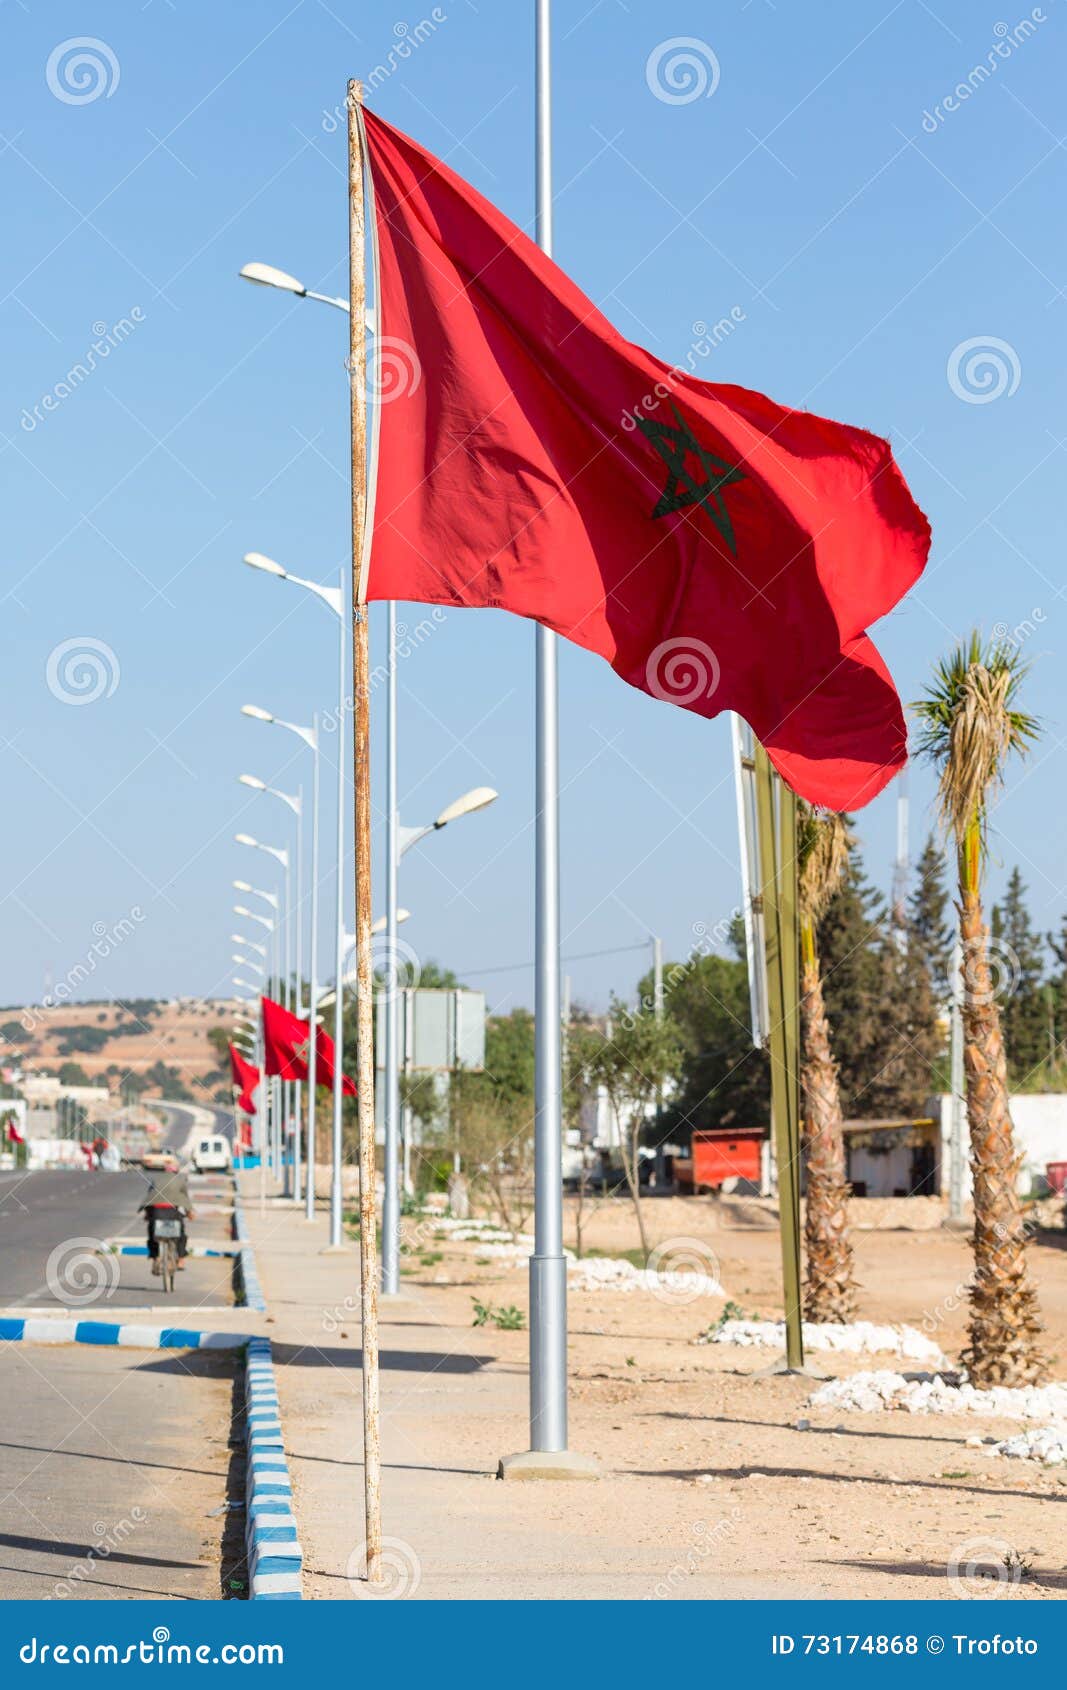 national flag of morocco